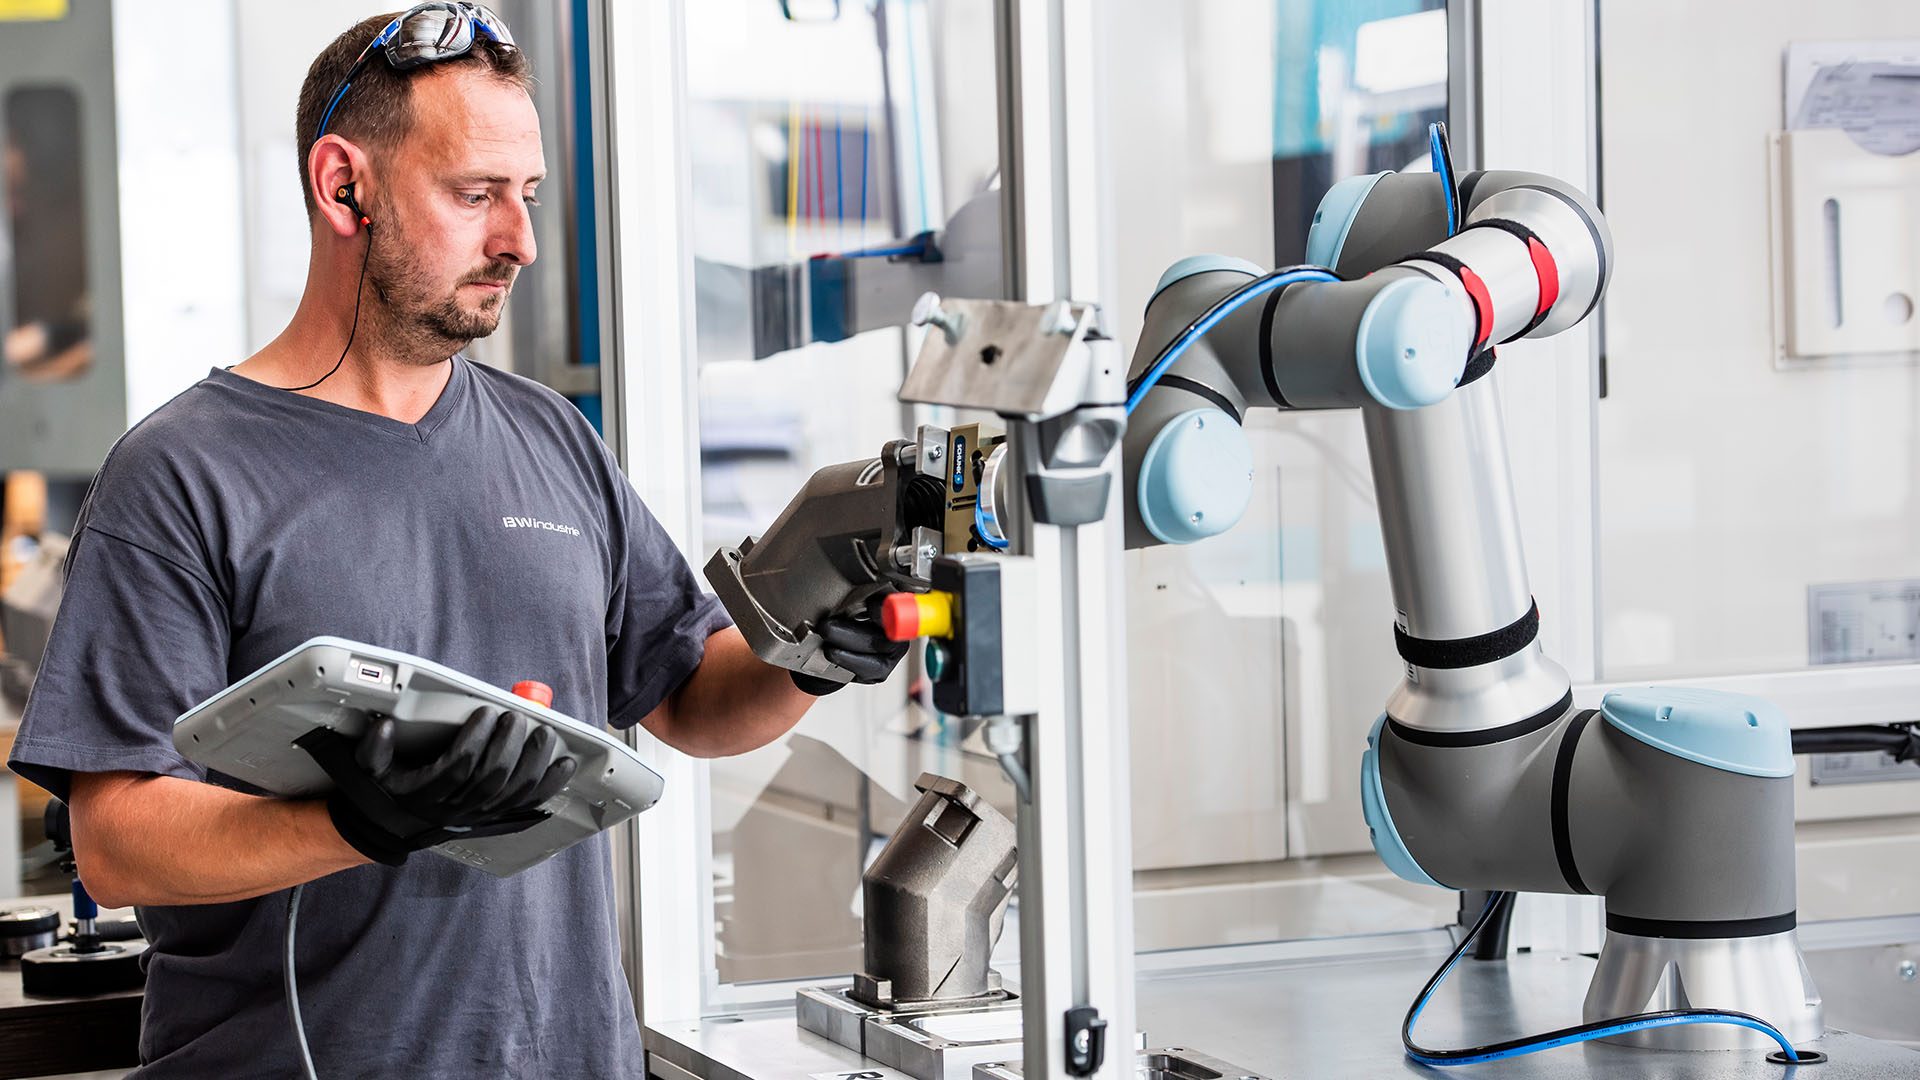 Les robots créent de nouveaux emplois ? Comment est-ce possible ? 1